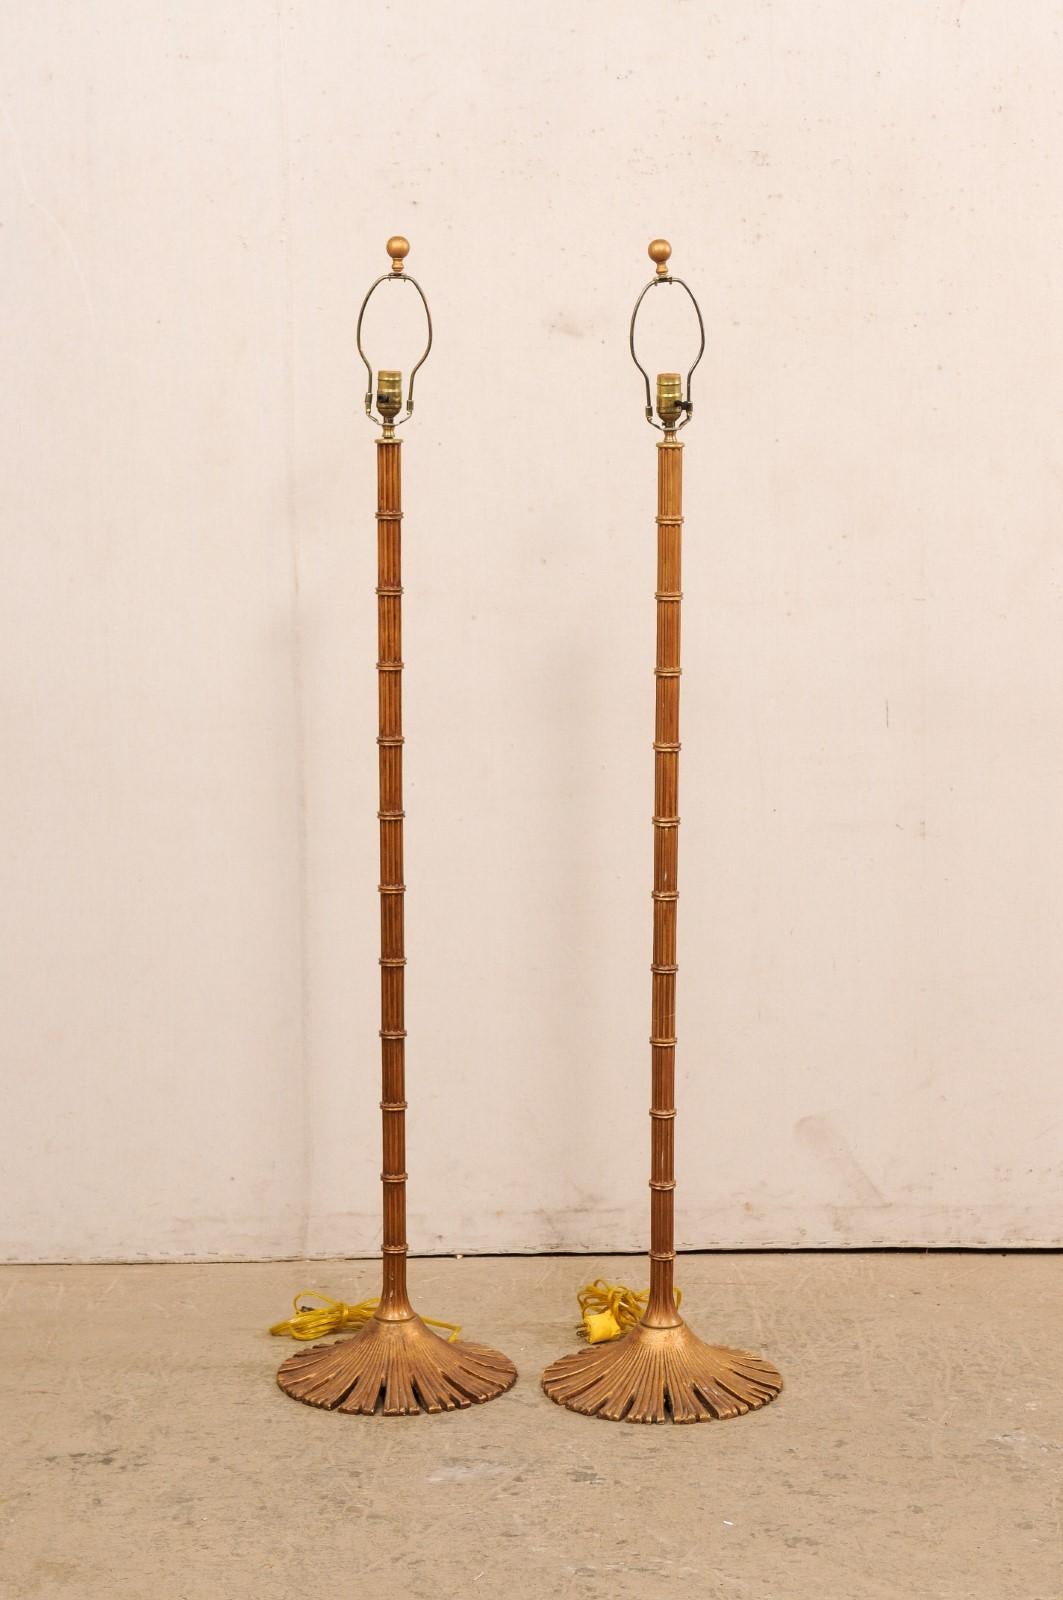 Ein Paar Stehlampen aus Messing von der amerikanischen Firma Chapman Manufacturing Company. Dieses Paar Stehlampen aus Messing im Vintage-Stil hat eine Säule im Bambus-Stil mit abgerundetem Sockel, der an eine Blume oder Blätter erinnert. Es gibt